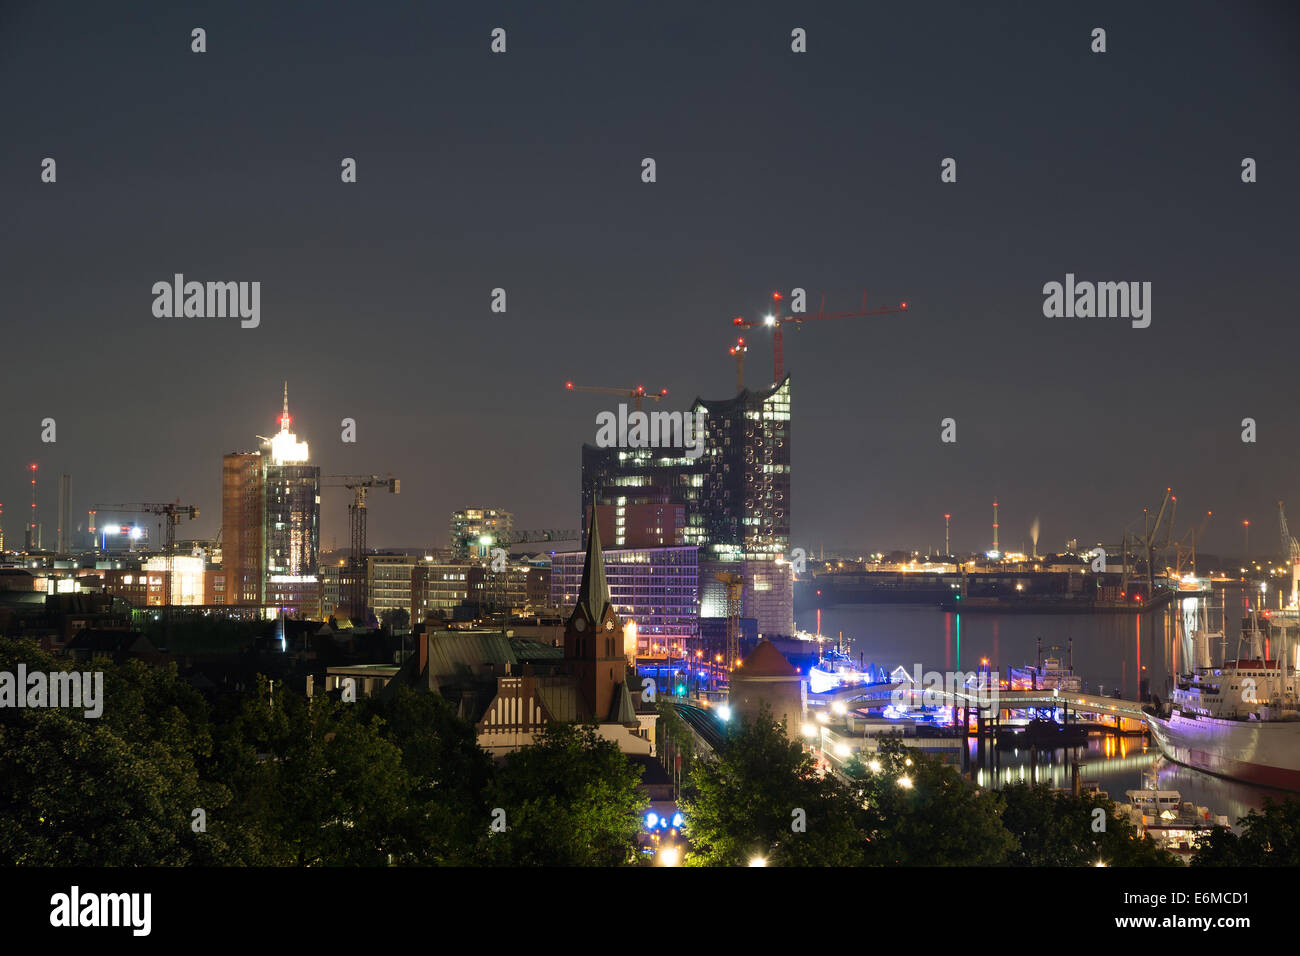 View from Hamburg at night Stock Photo